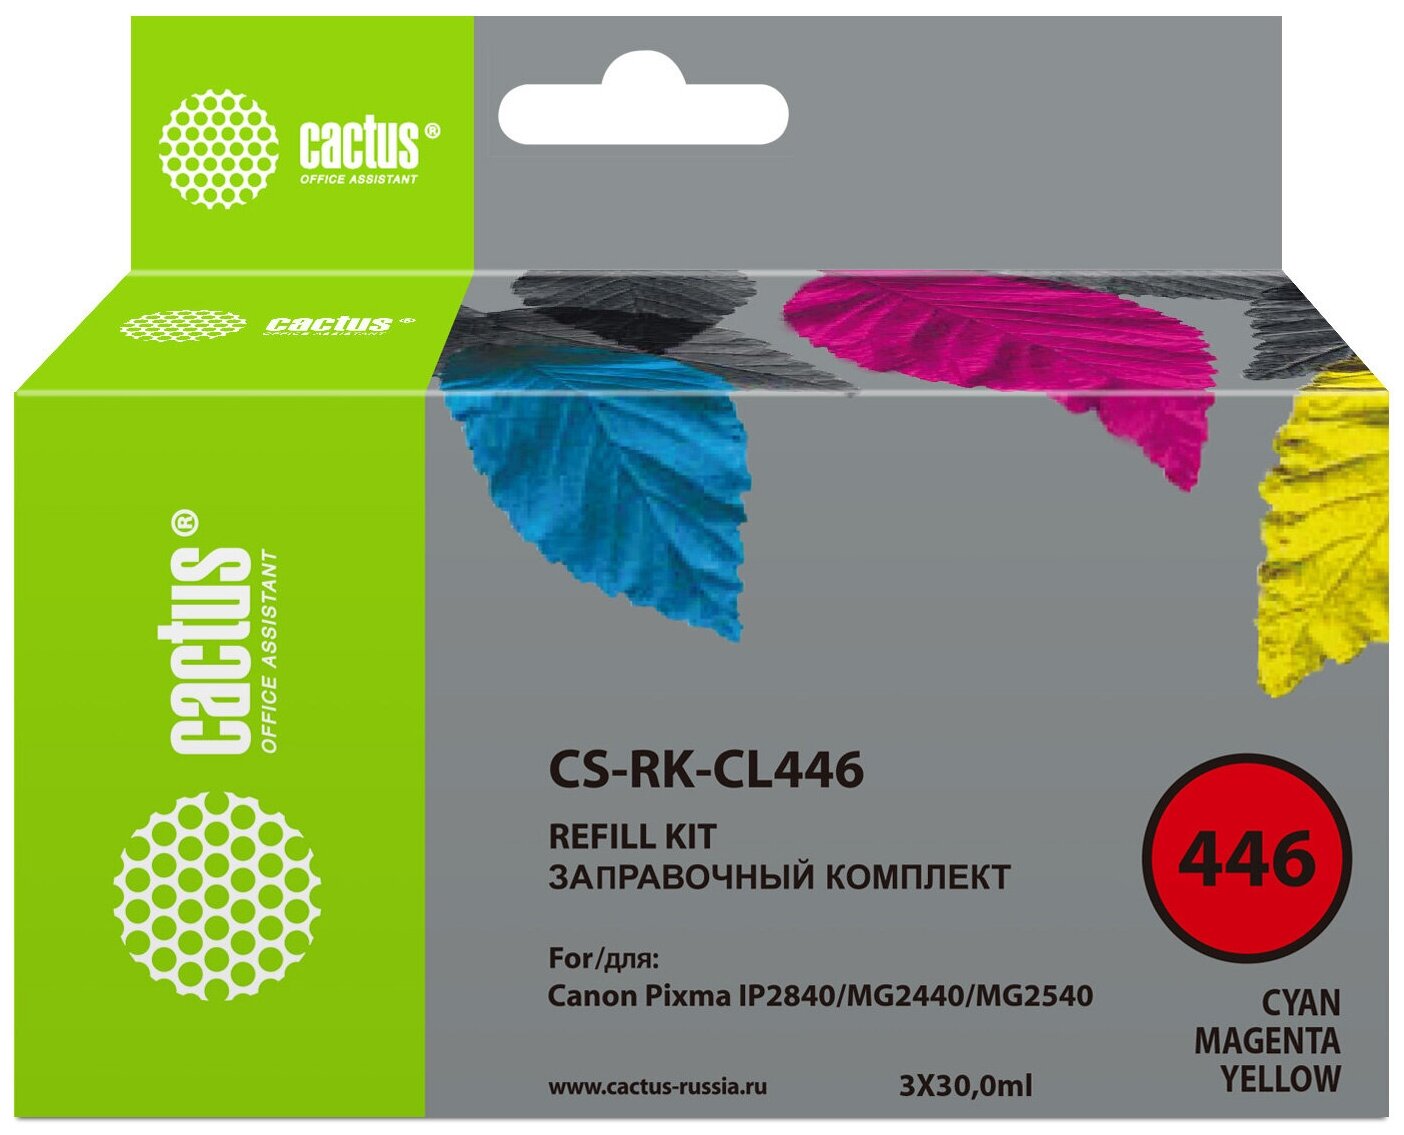 Заправочный набор Cactus CS-RK-CL446 желтый, пурпурный, голубой 30мл для Canon